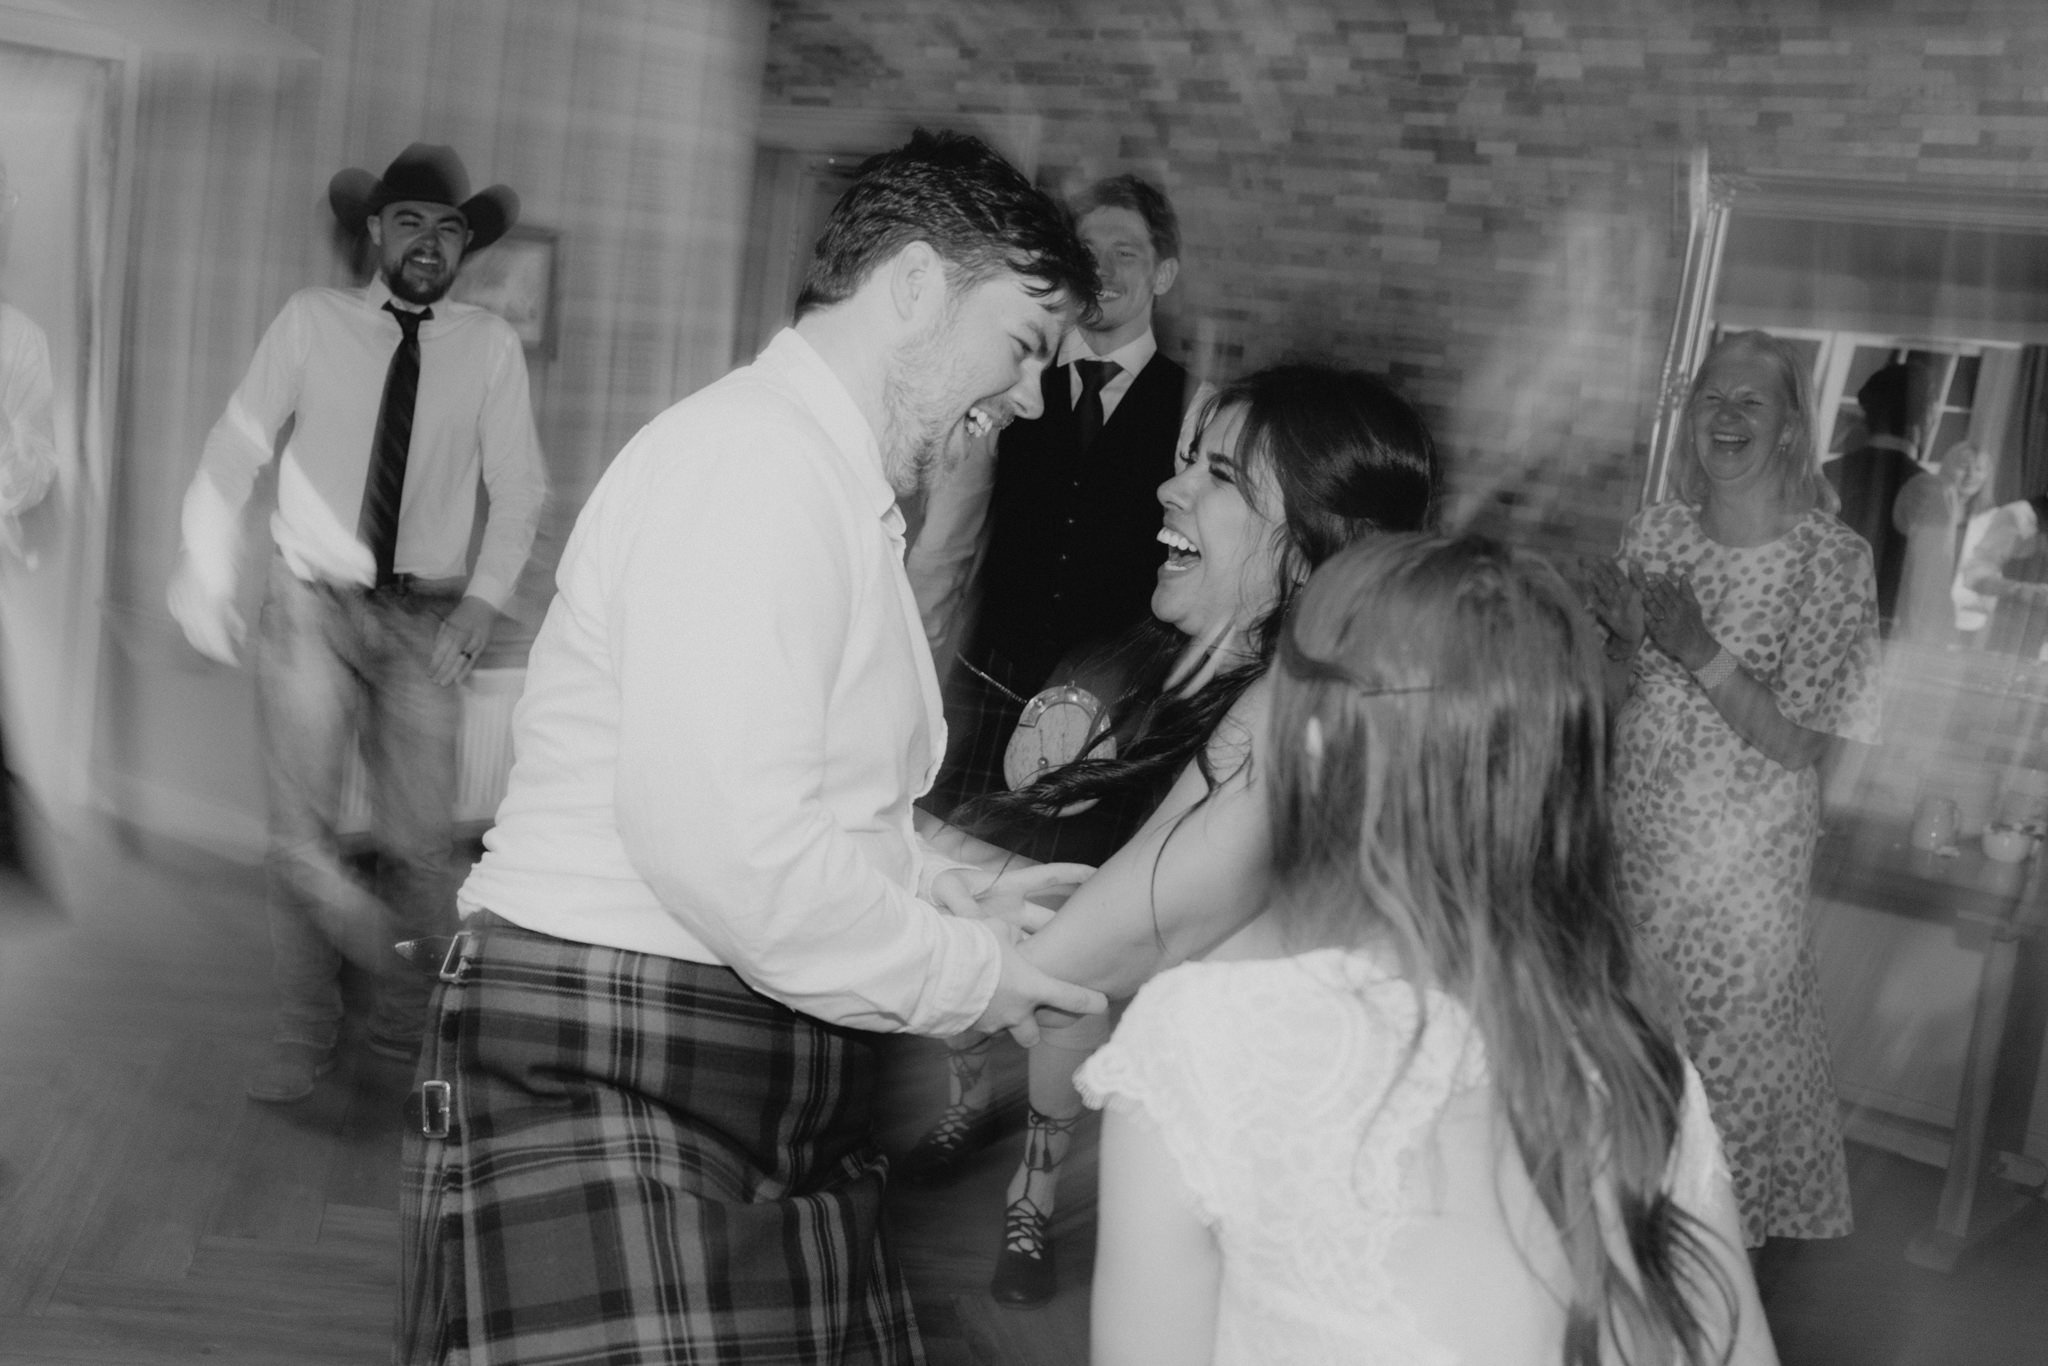 Glen Clova Hotel wedding photography | Aberdeenshire wedding photographer and videographer-76.jpg